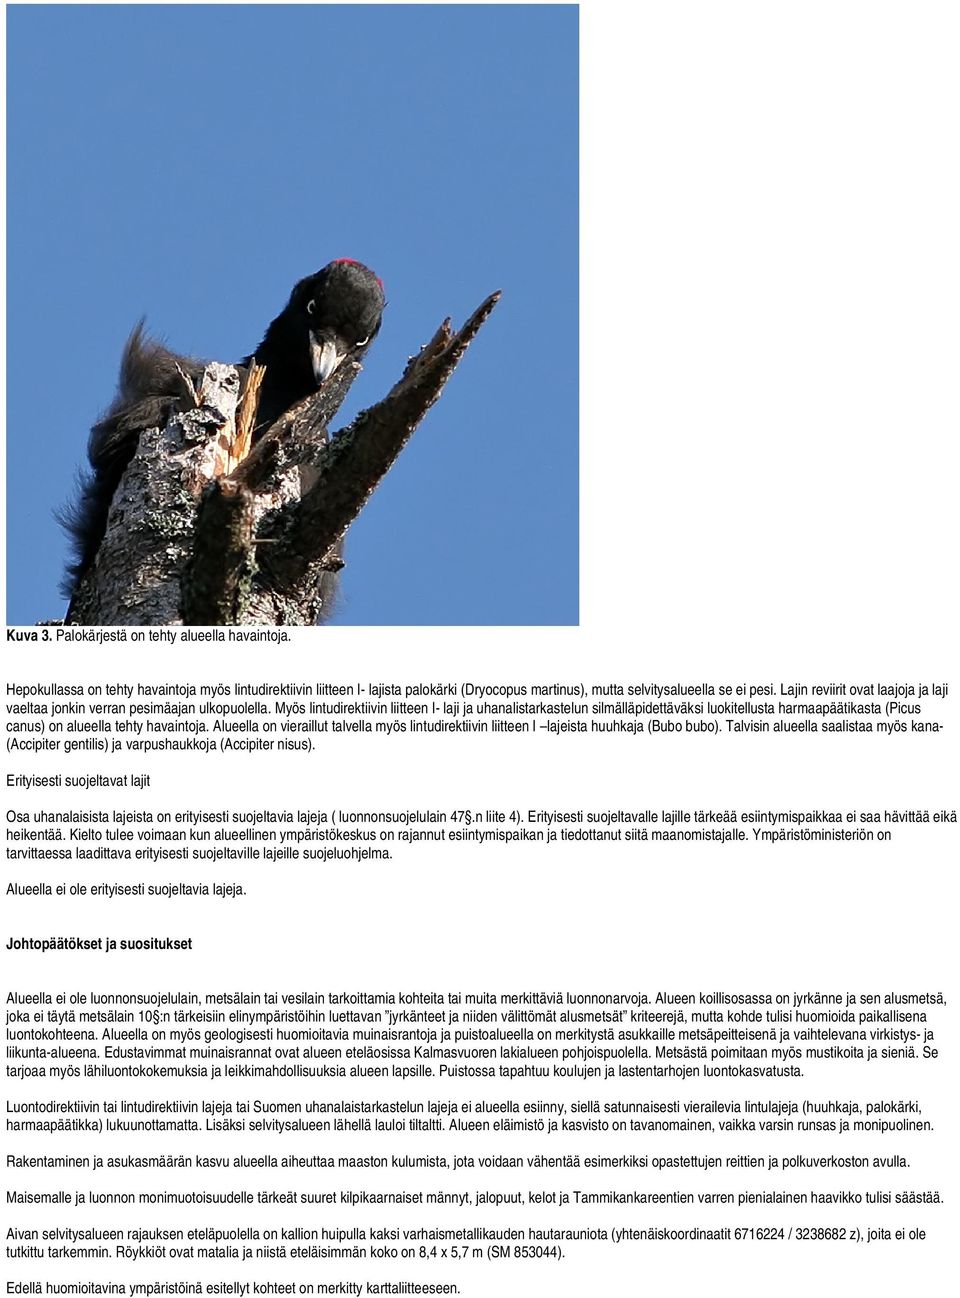 Myös lintudirektiivin liitteen I- laji ja uhanalistarkastelun silmälläpidettäväksi luokitellusta harmaapäätikasta (Picus canus) on alueella tehty havaintoja.